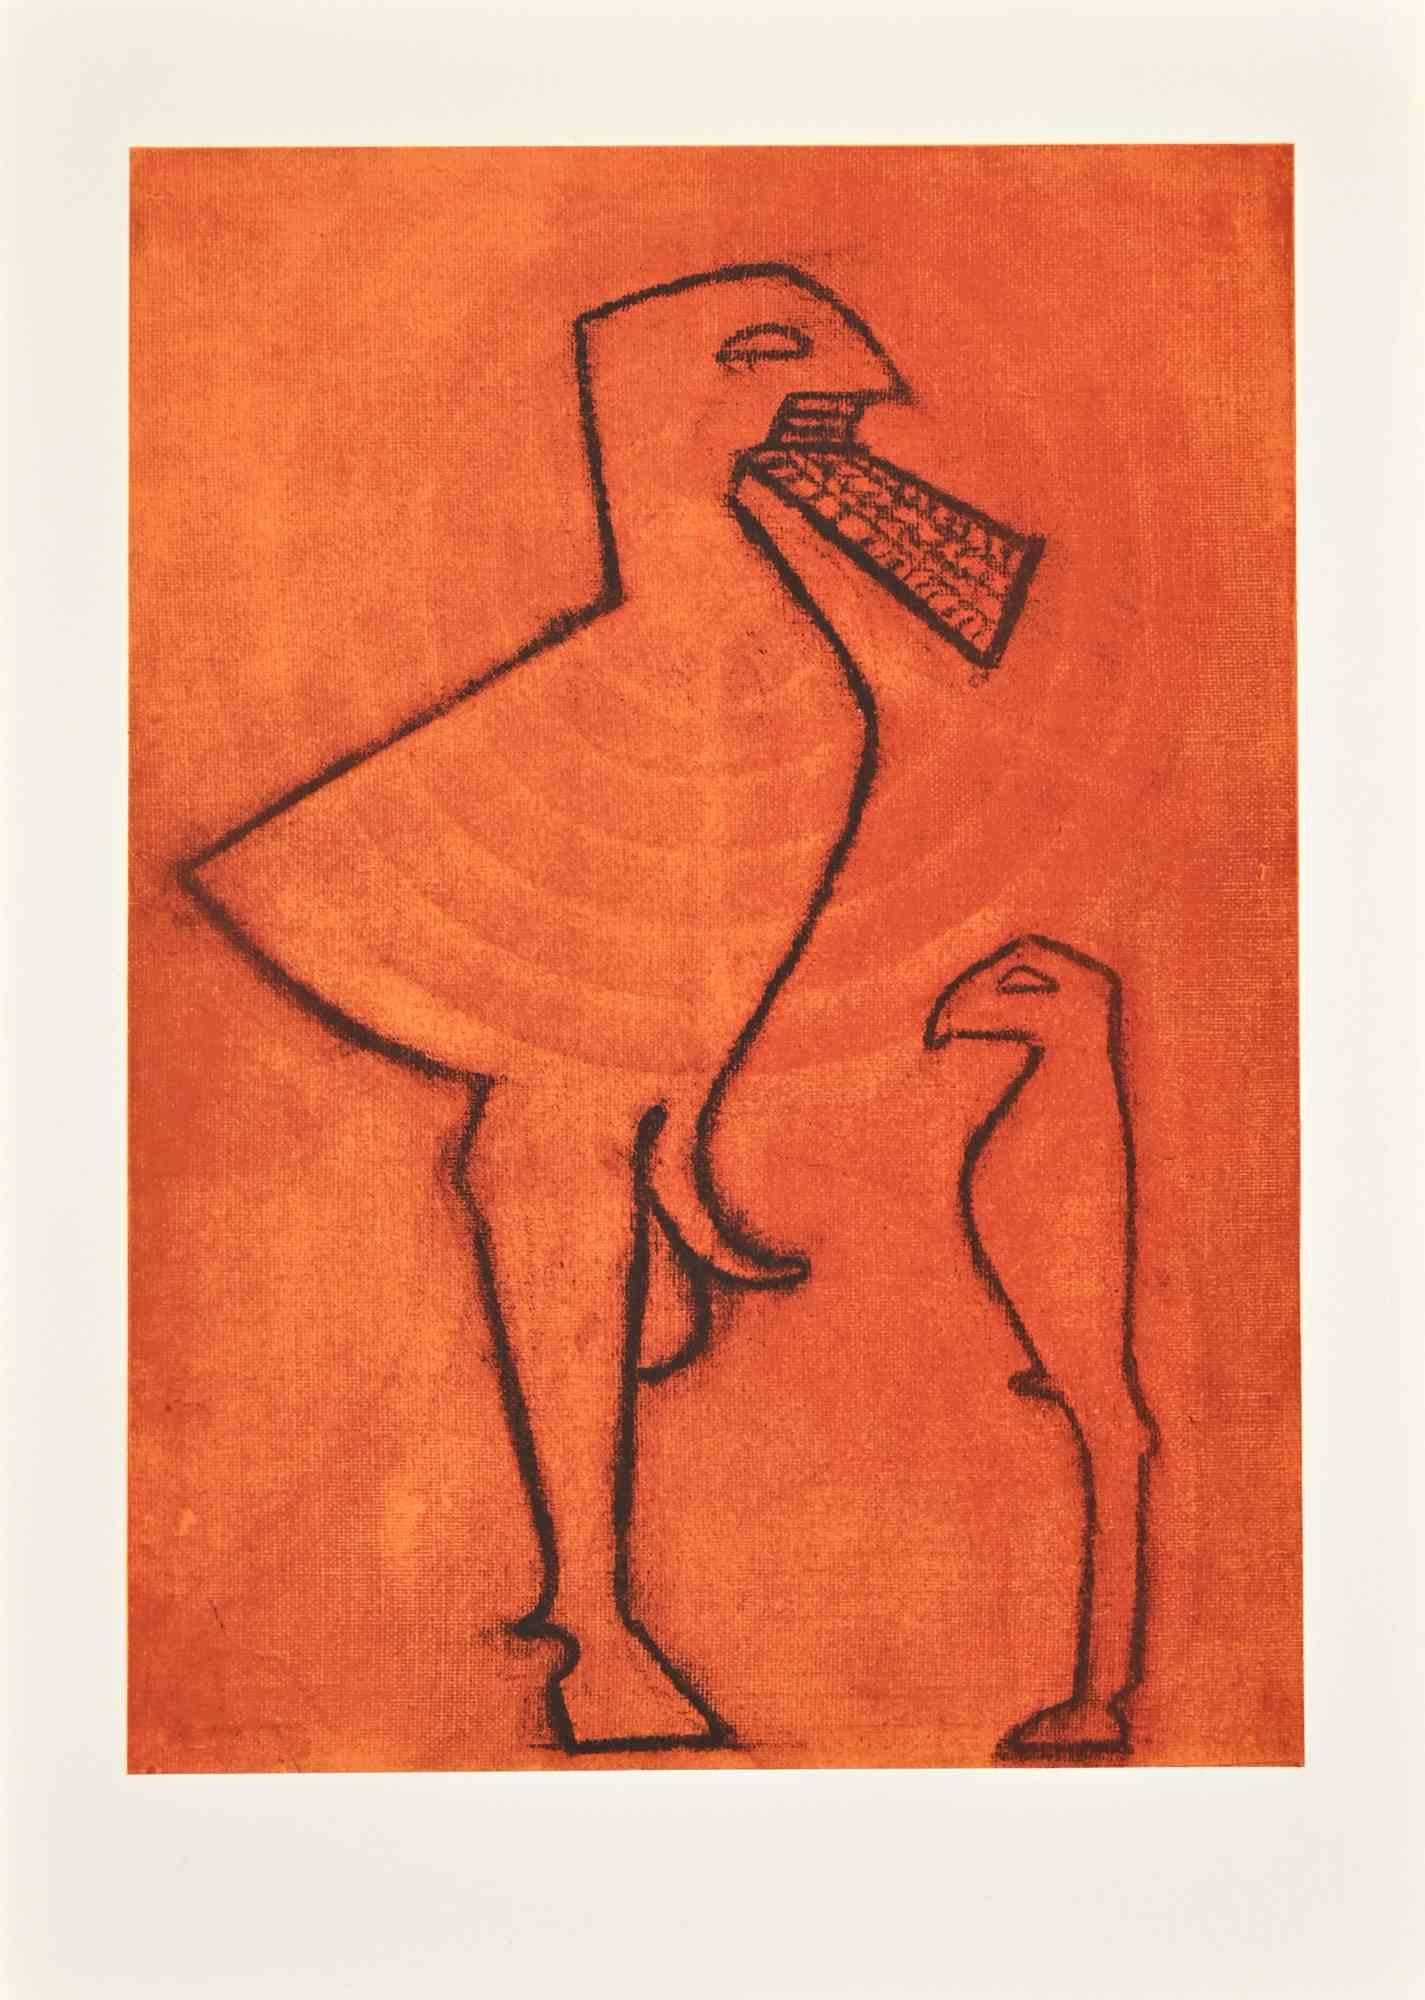 Idoles est une lithographie sur papier Arches réalisée par Max Ernst en 1972.

Appartient à la suite "Judith". Édition limitée à 500 exemplaires.

Non signé et non numéroté, tel que publié.

Bonnes conditions.

La Suite a été réalisée pour illustrer